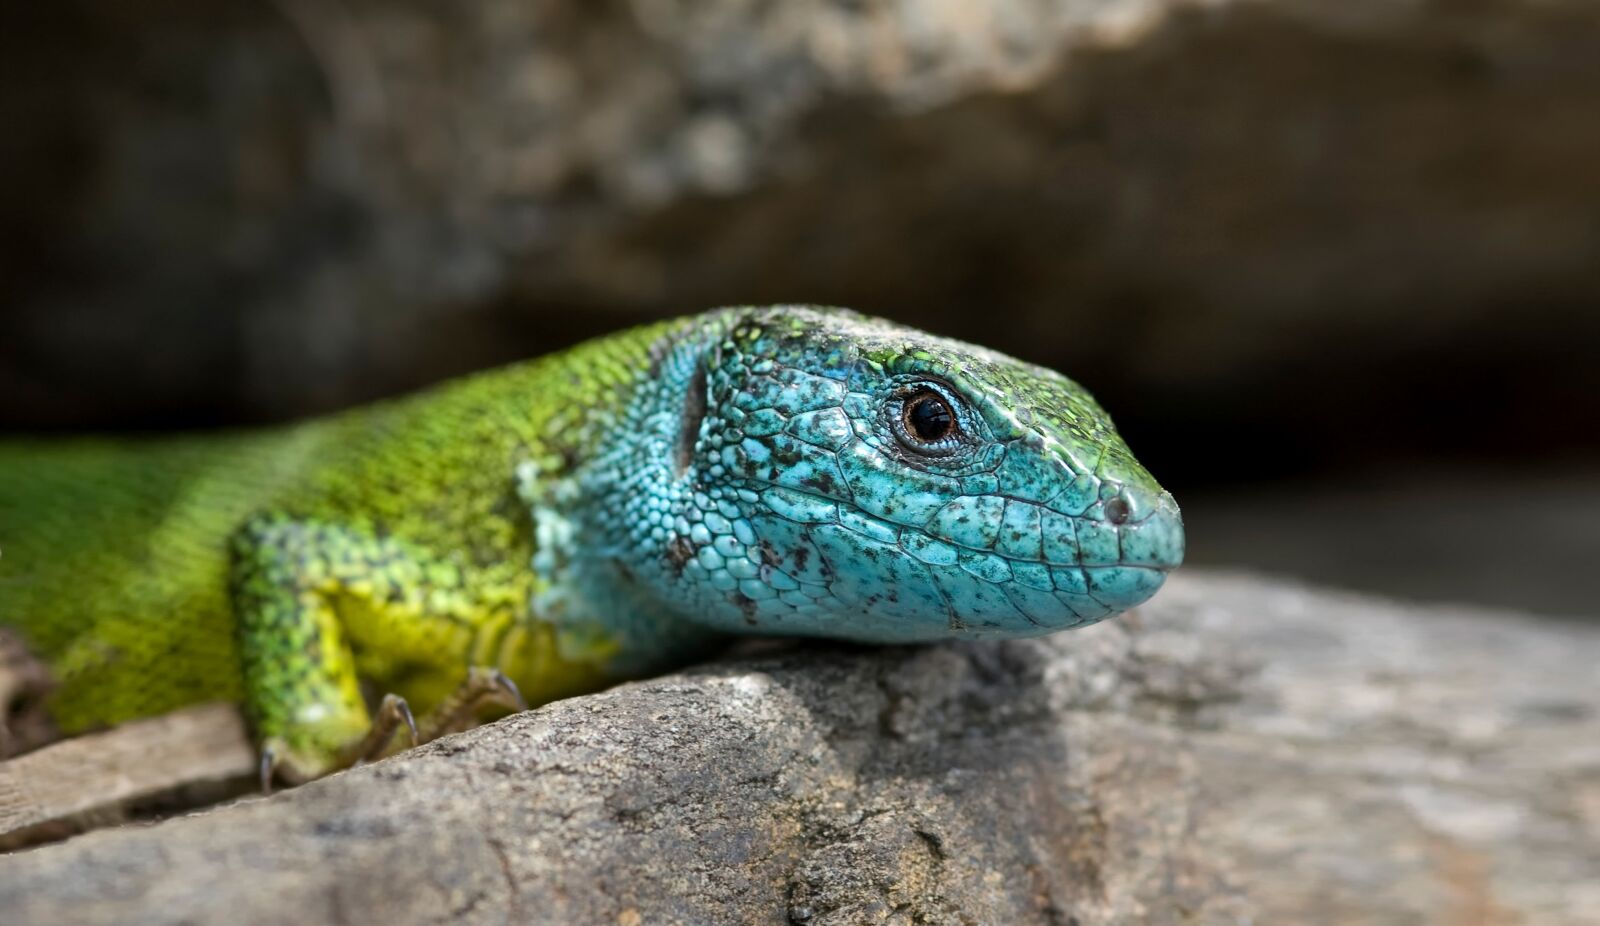 Nikon D70s sample photo. Salamander, rock, lizard photography